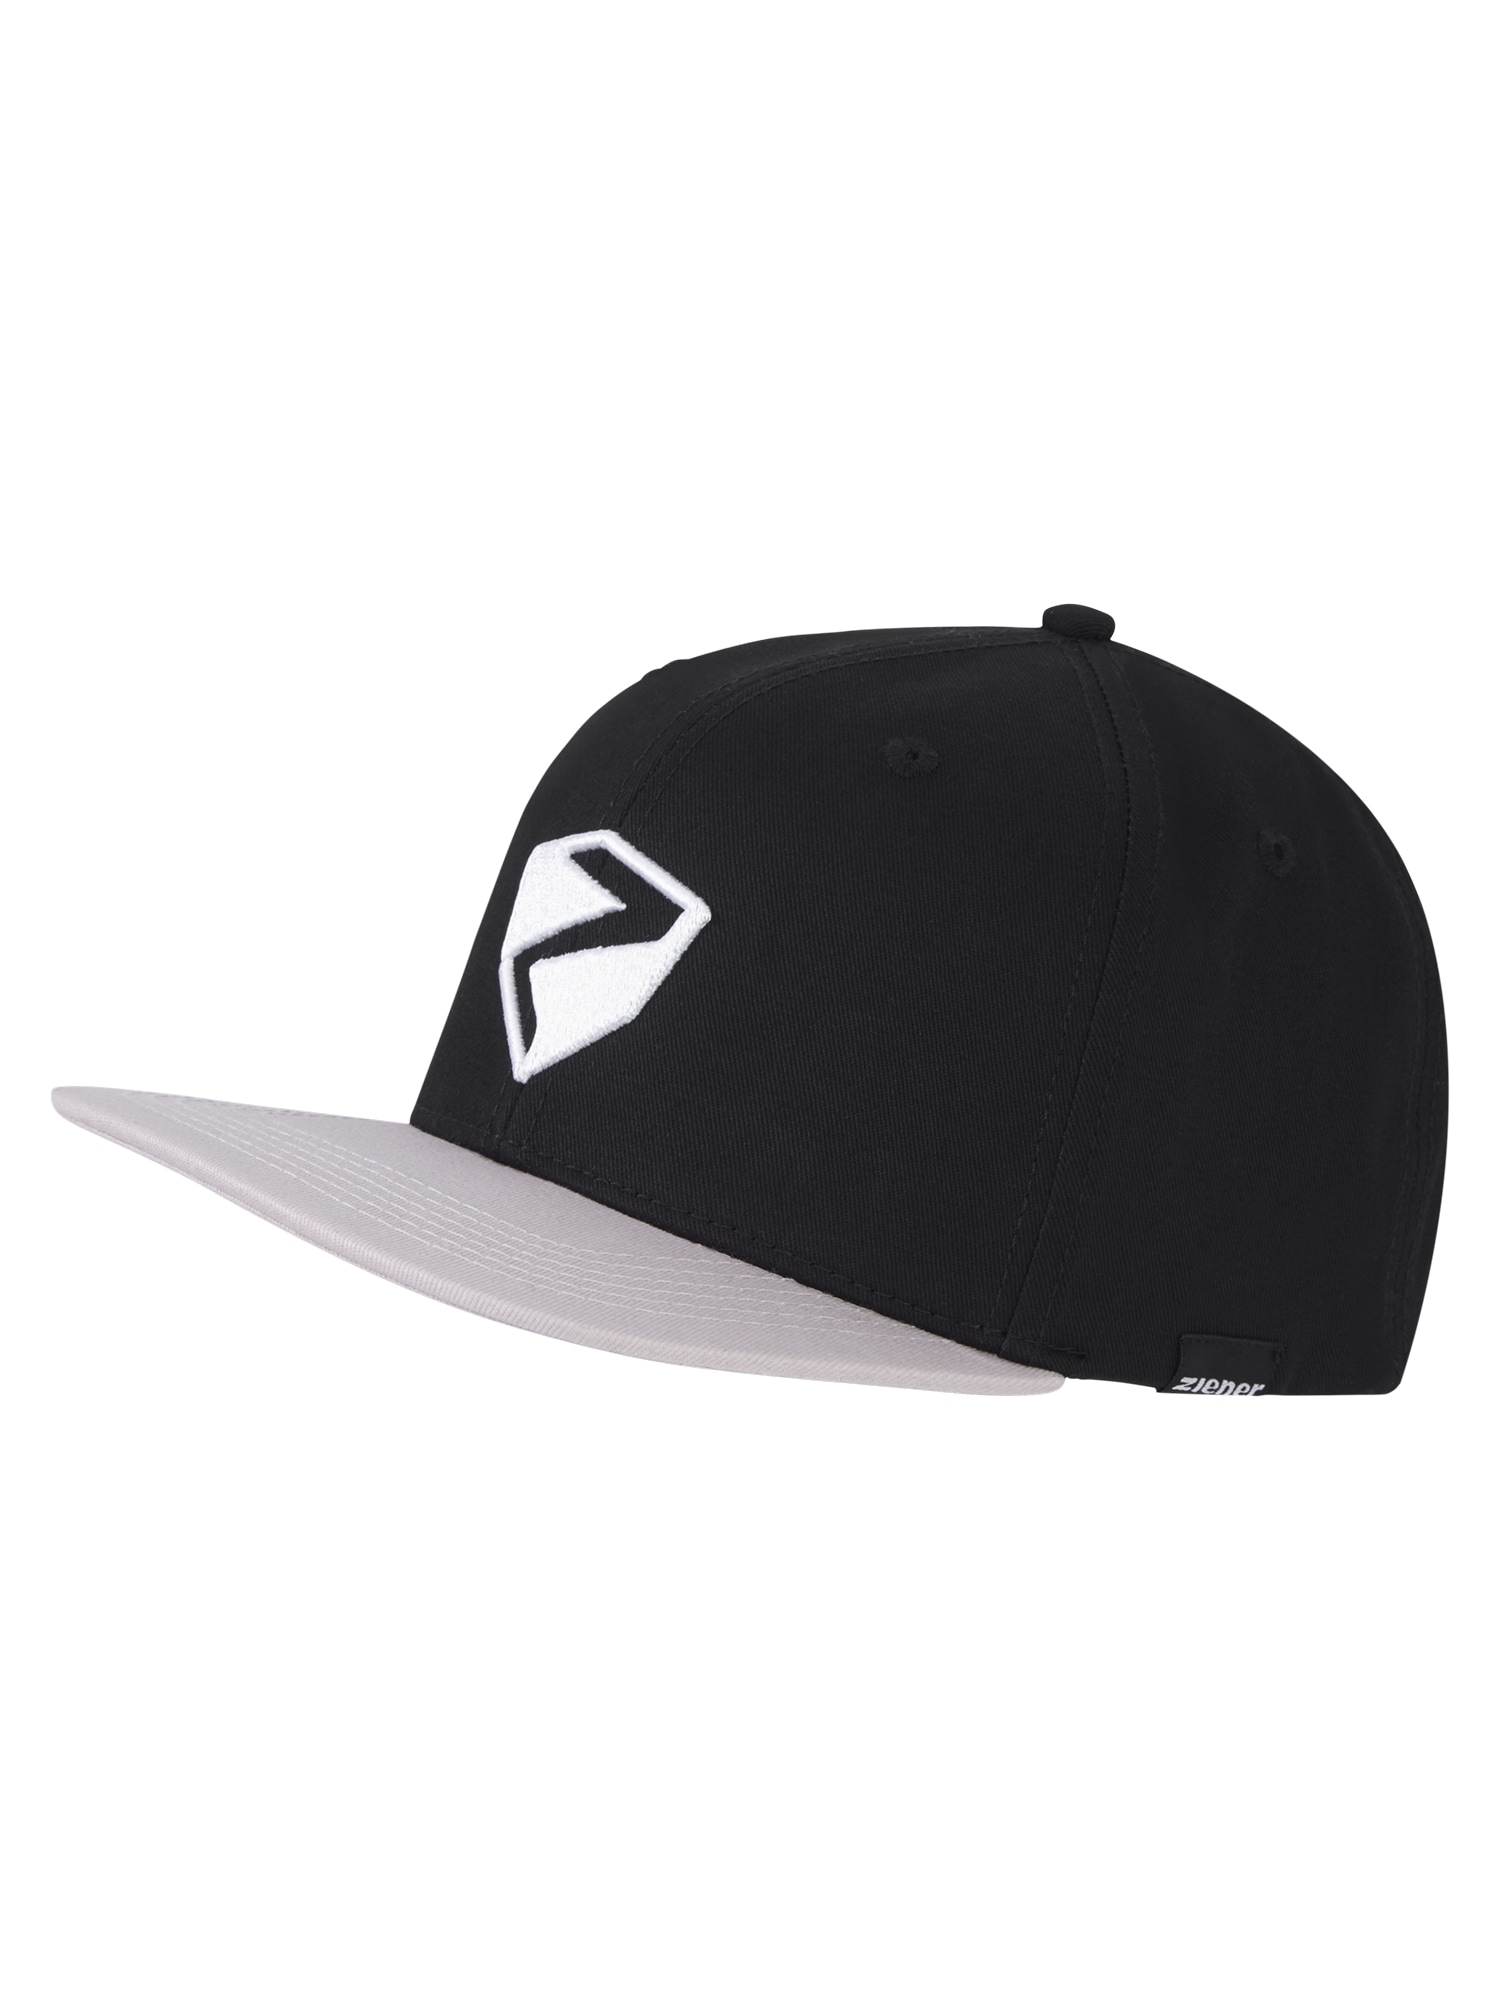 Ziener Baseball Cap »ISEDOR cap« im Online-Shop bestellen